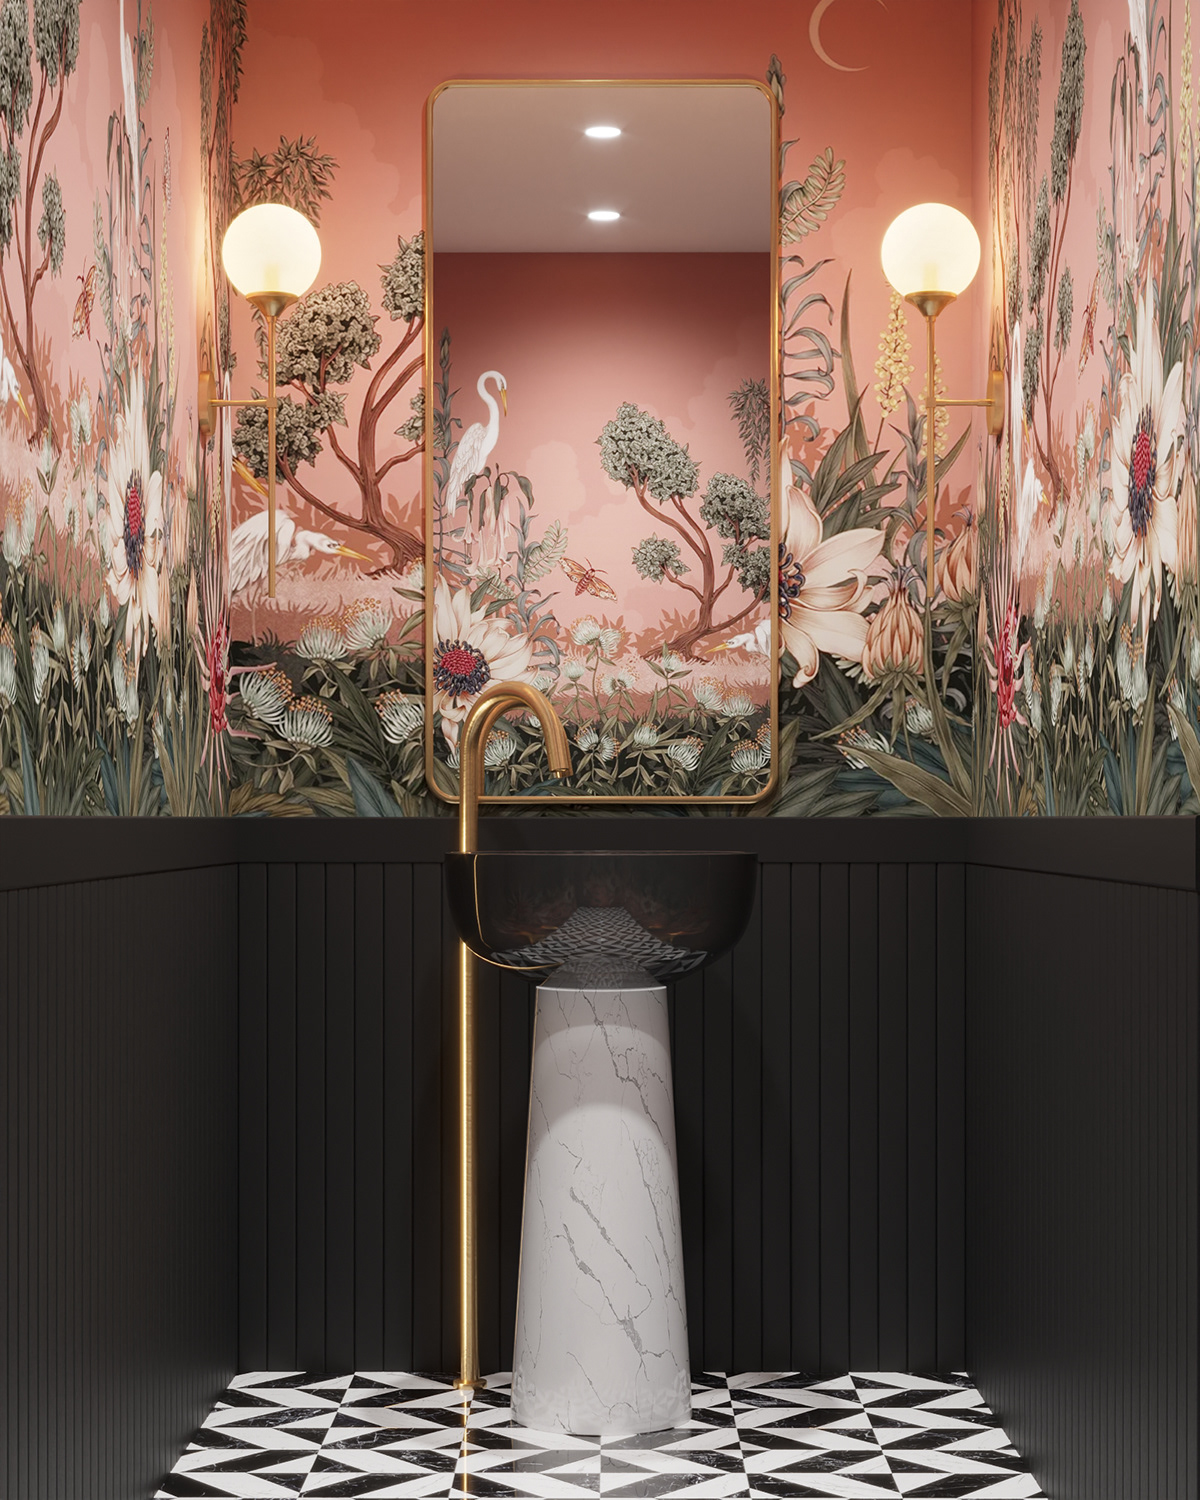 3dvisualization archviz bathroom interior design  CGI 3drendering architecture Render visualization modern